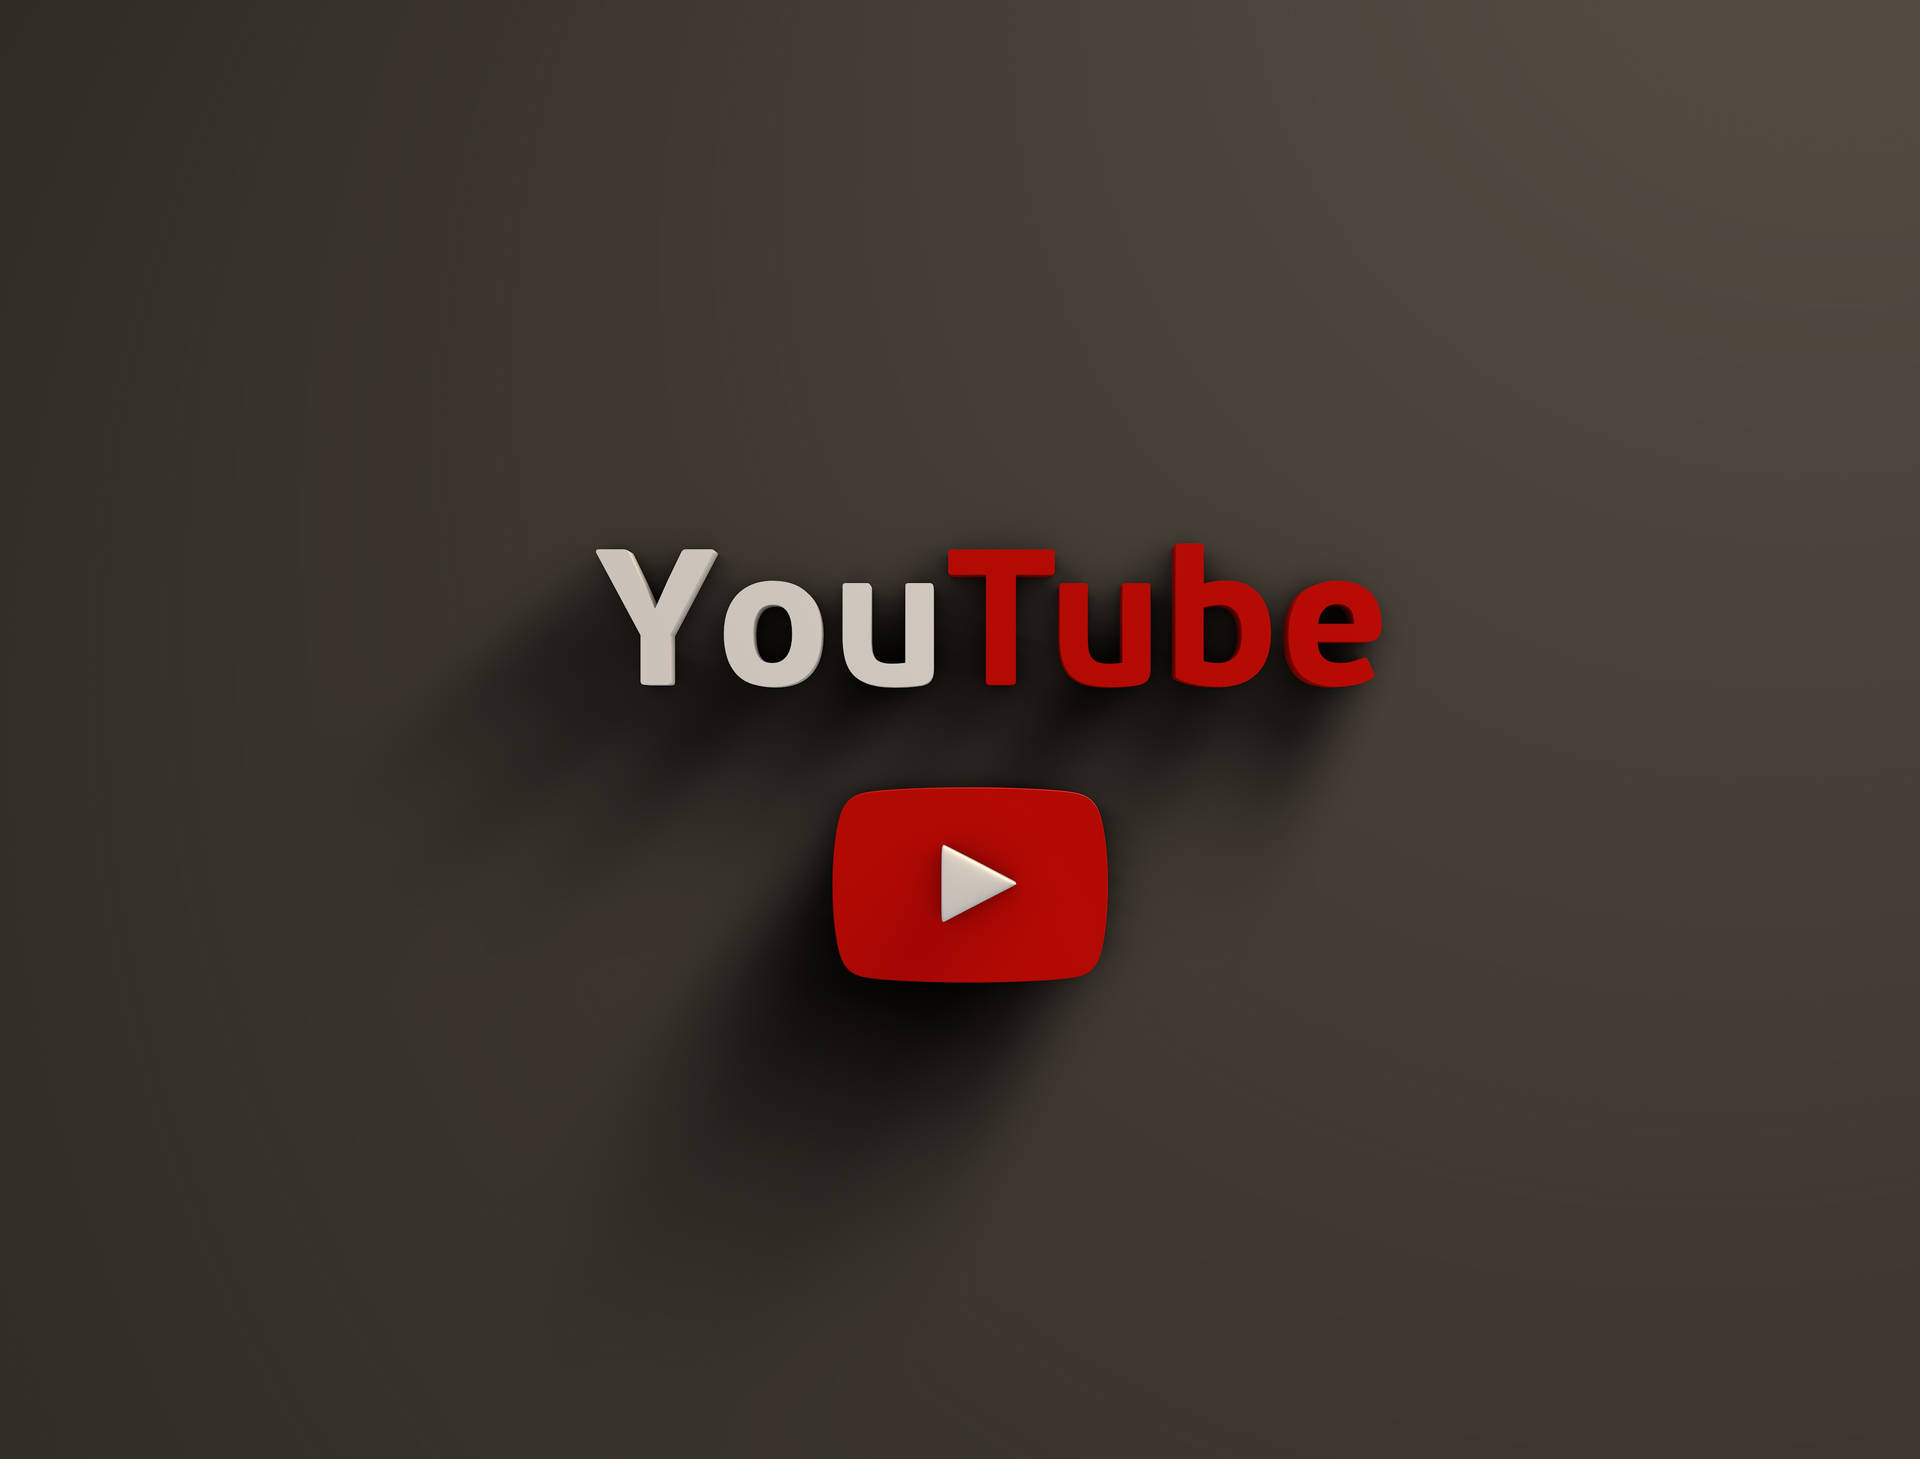 Logotipode Youtube Sobre Fondo Gris Oscuro Fondo de pantalla